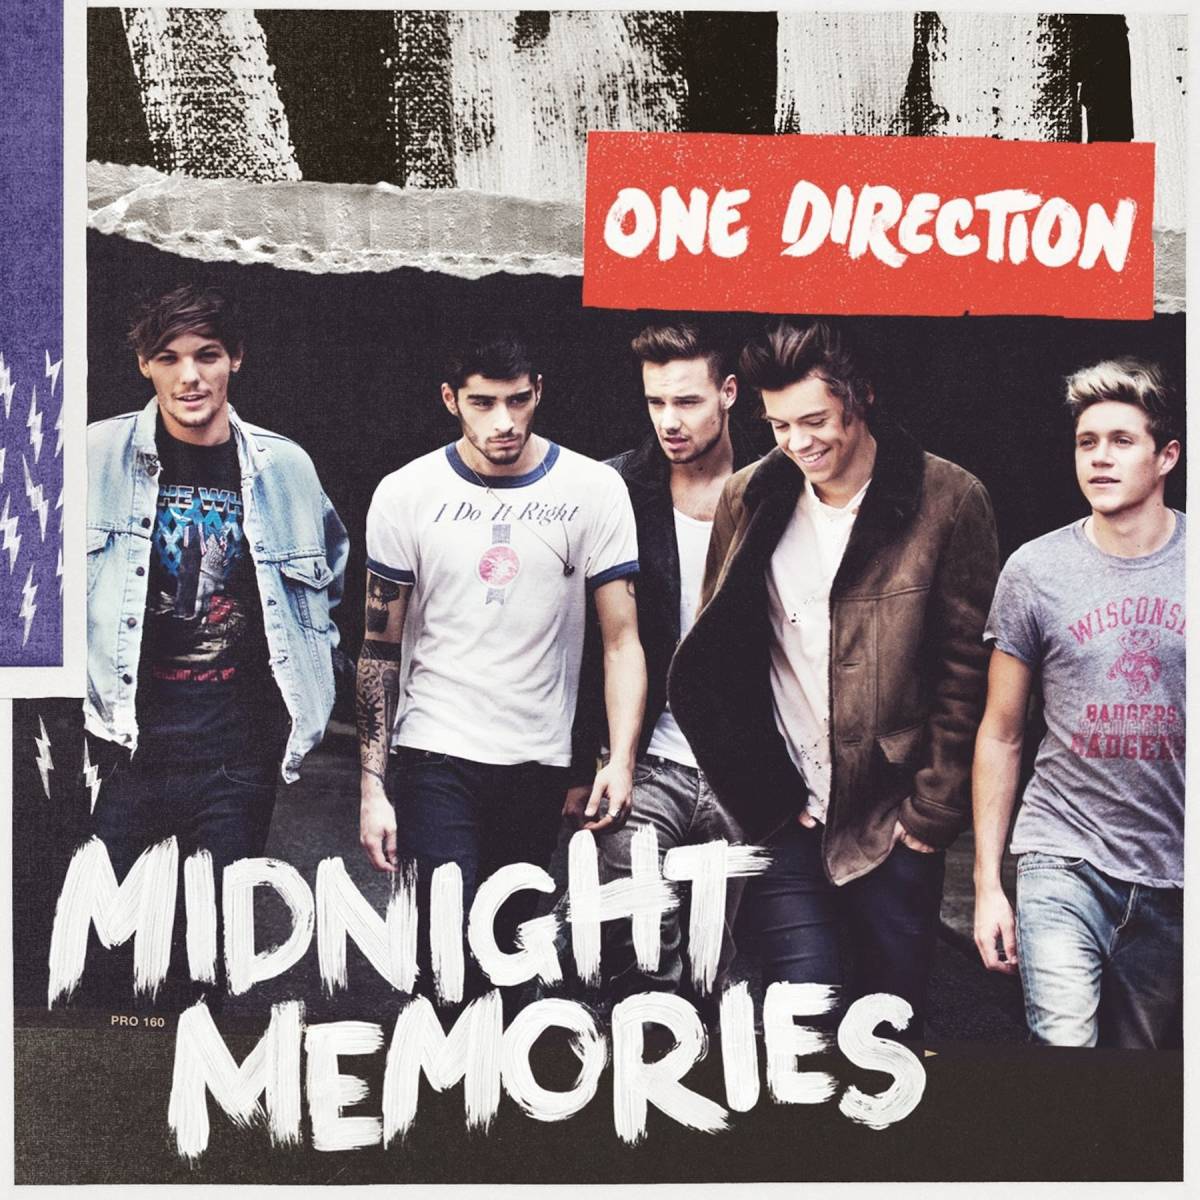 Midnight Memories est la troisième œuvre studio du populaire groupe de garçons anglo-irlandais One Direction.